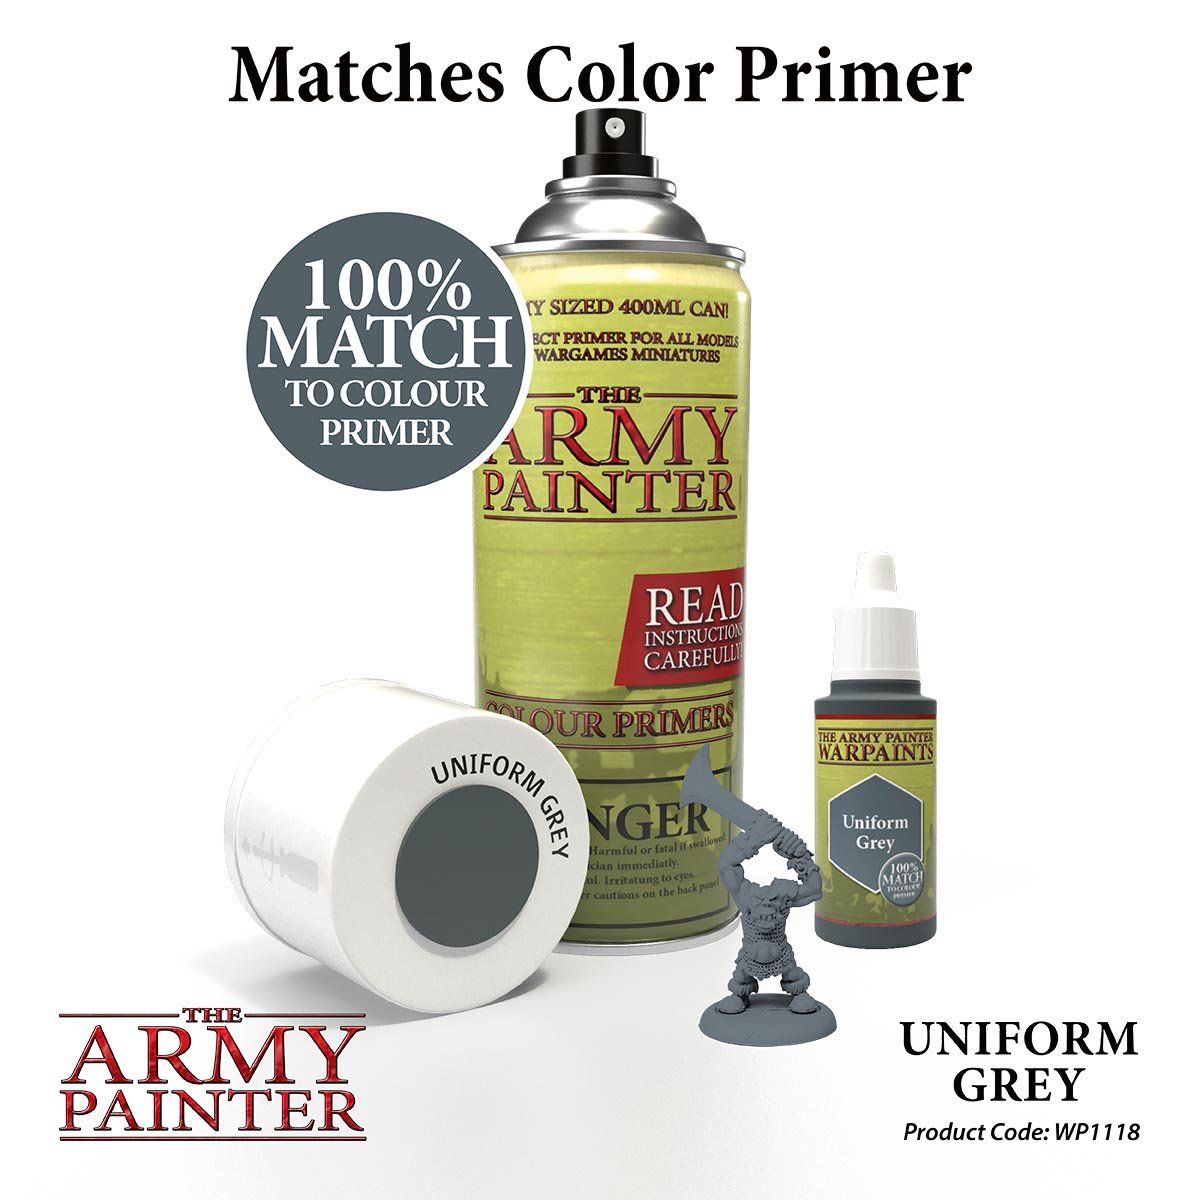 The Army Painter Warpaints WP1118 Uniform Grey Acrylic Paint 18ml bottle